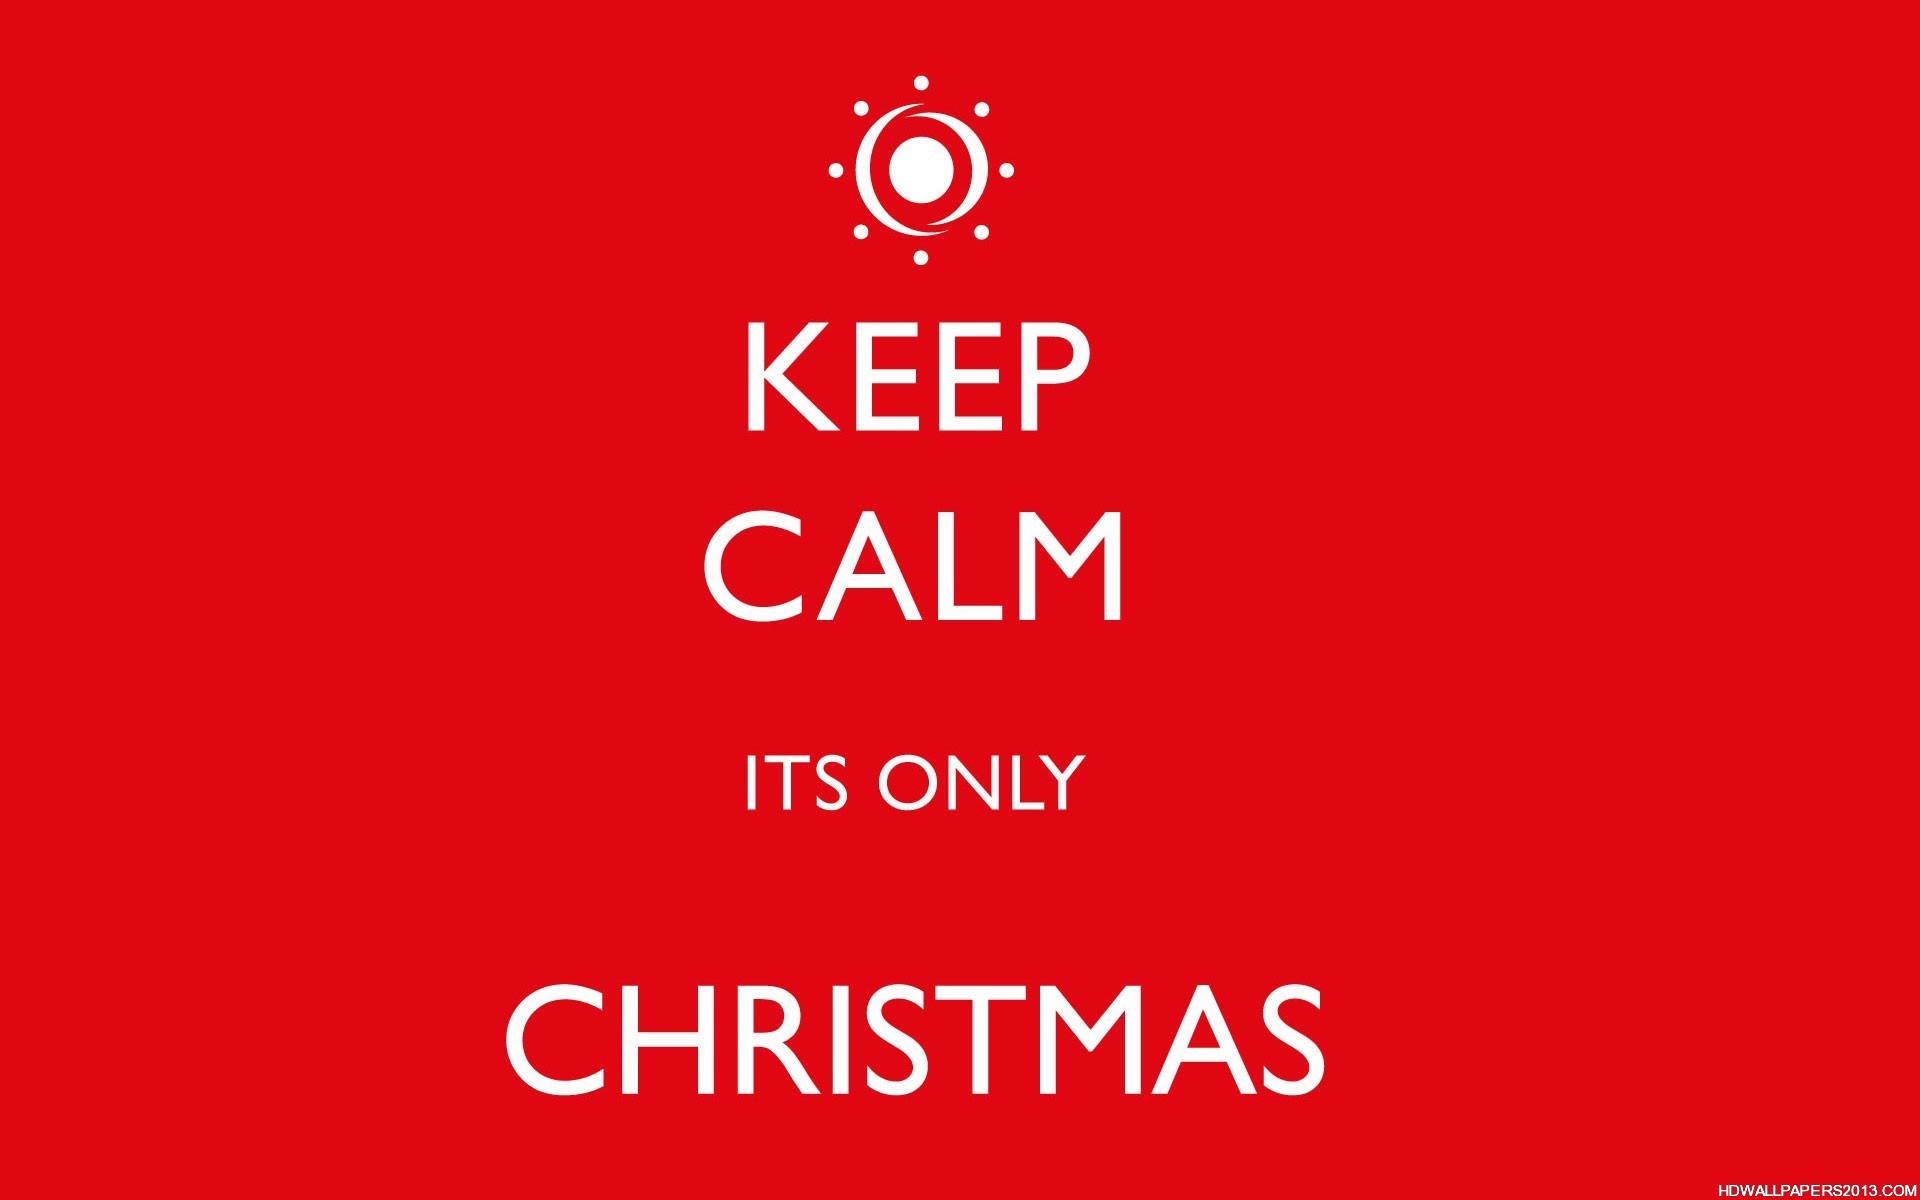 Keep Calm Christmas Wallpaper wallpaper   1011326